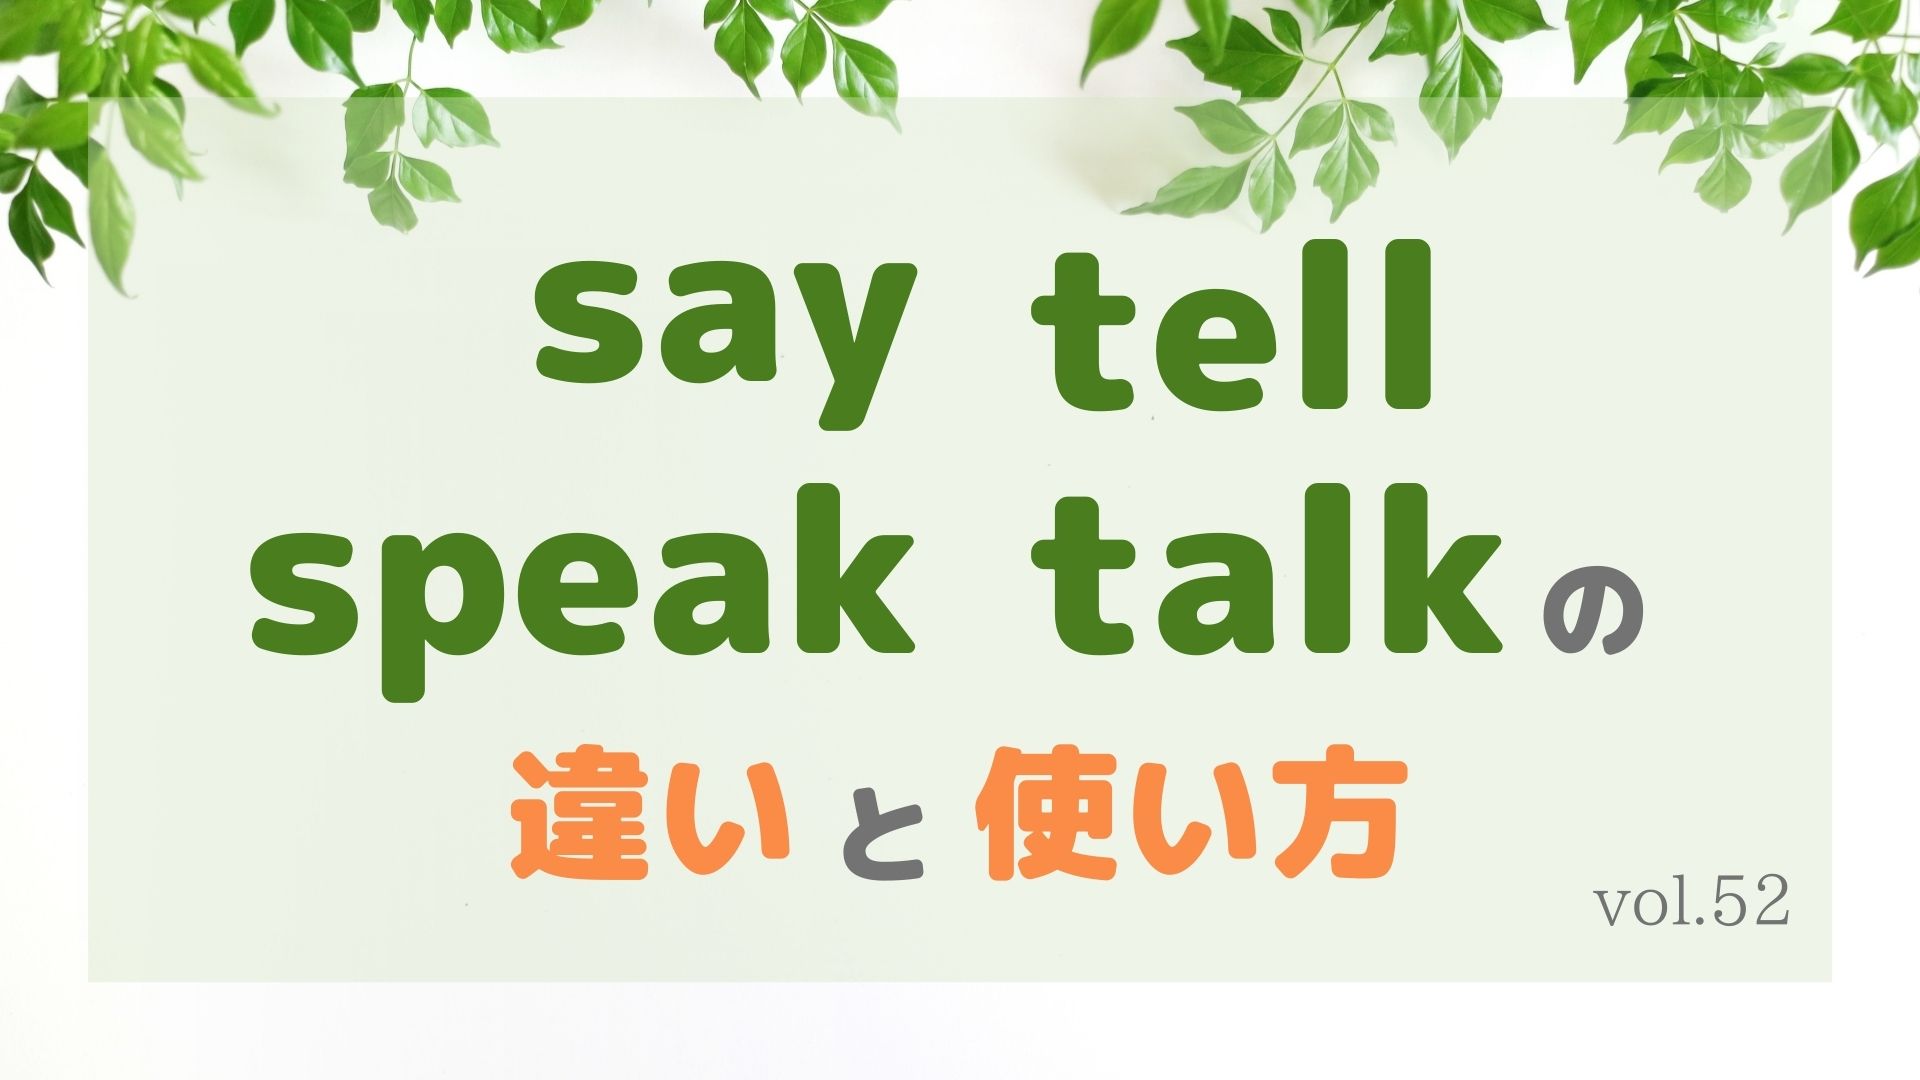 say tell speak talkの違いと使い方